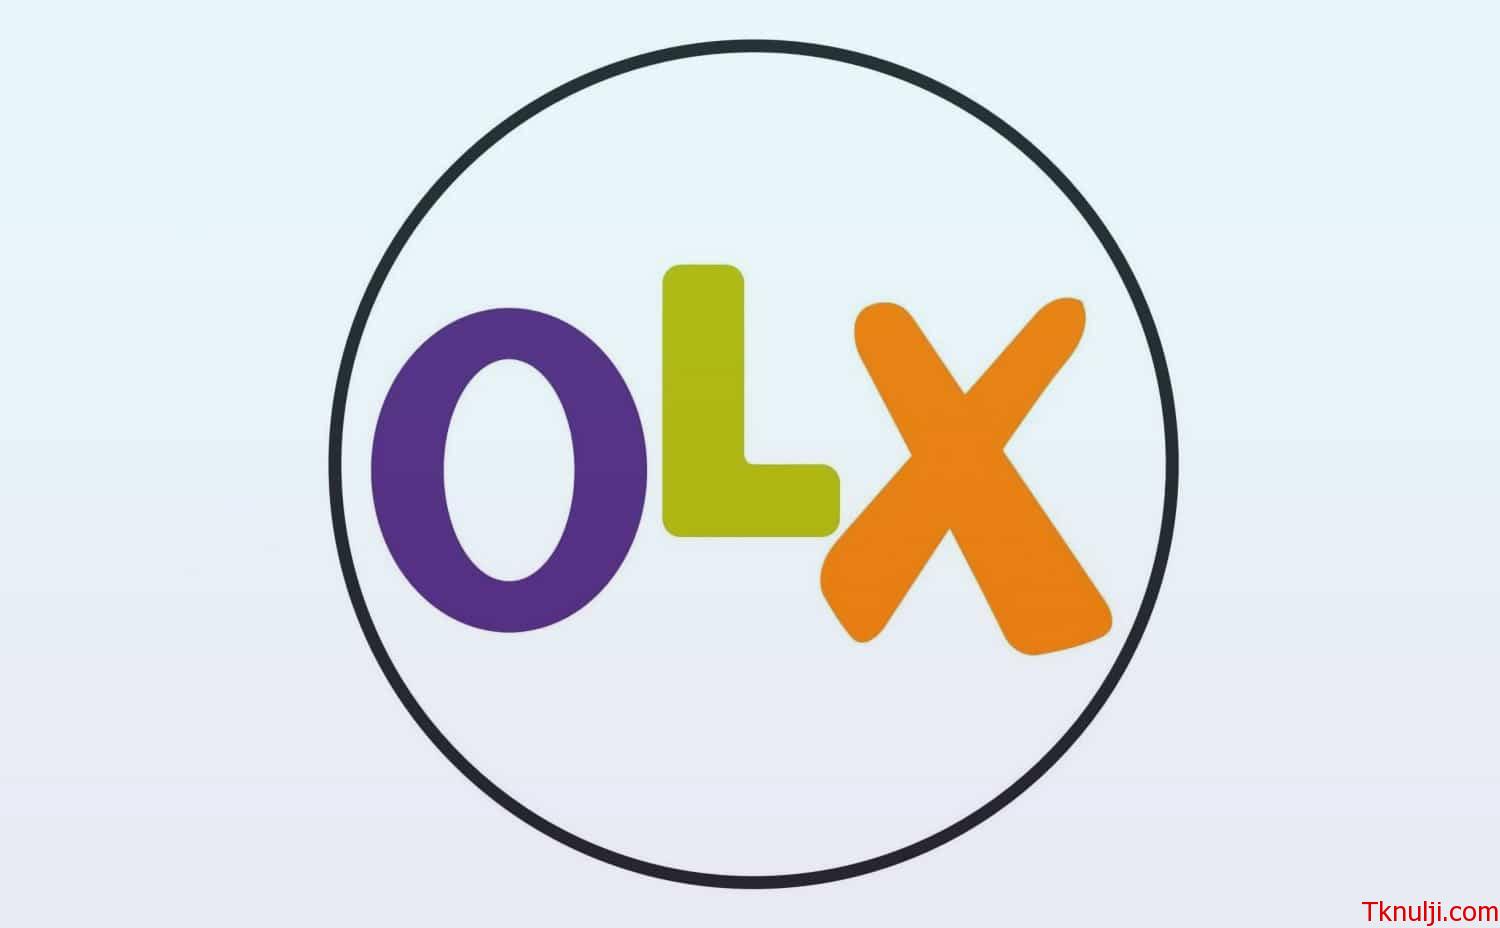 تحميل برنامج اوليكس 2022 OLX Arabia للبيع والشراء مجانا للكمبيوتر وللموبايل اخر تحديث